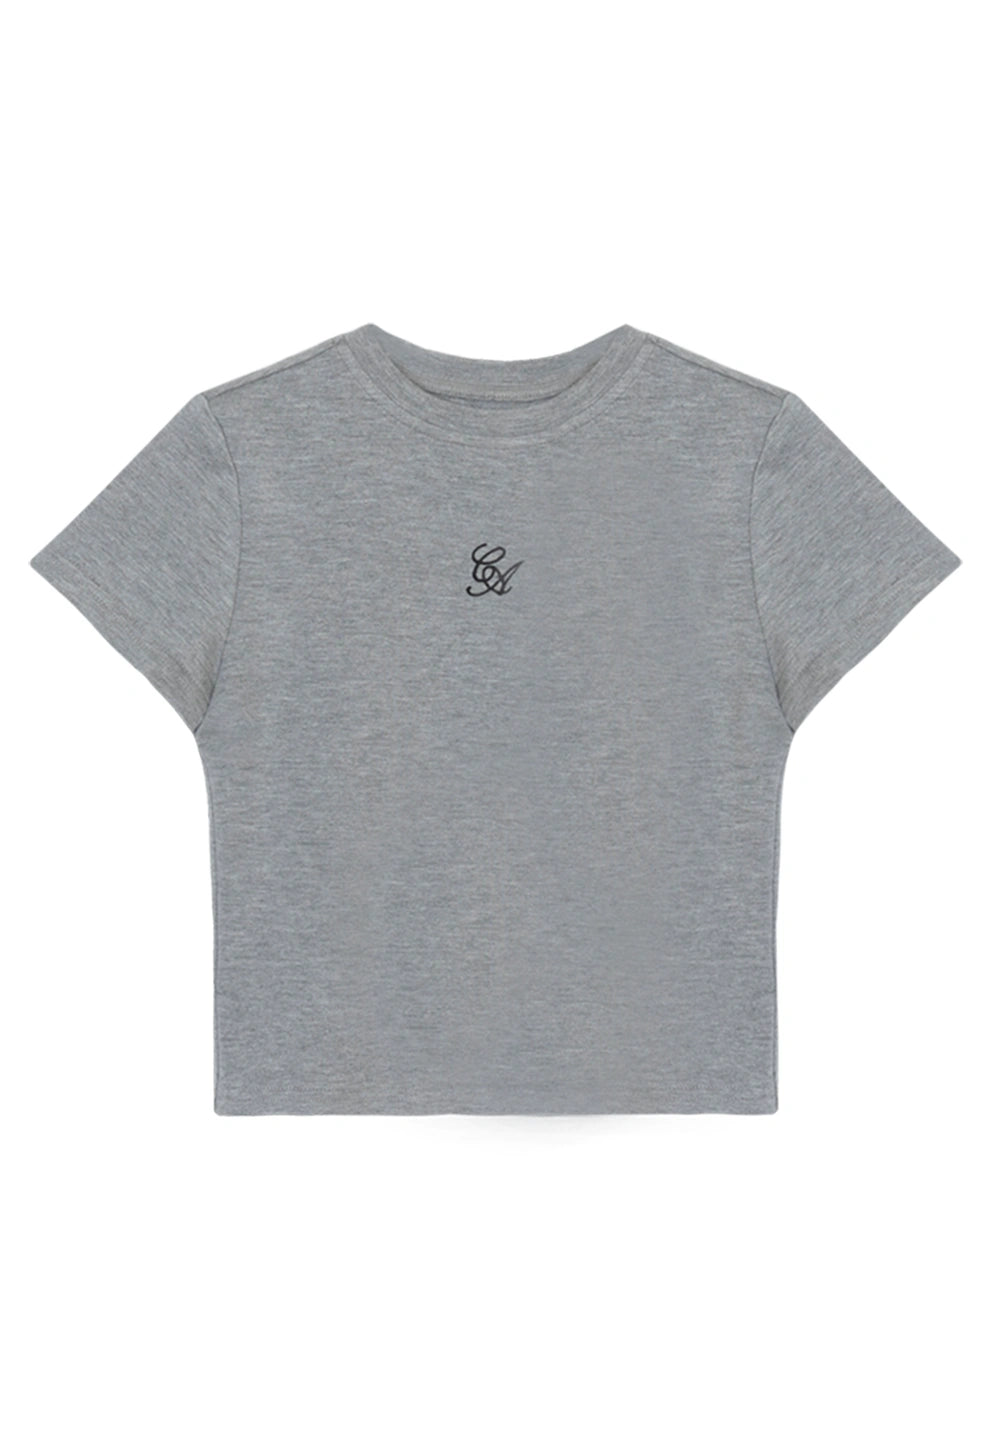 T-Shirt Kelabu Potong Wanita dengan Logo Sulaman Elegan - Campuran Kapas Lembut, Selesa